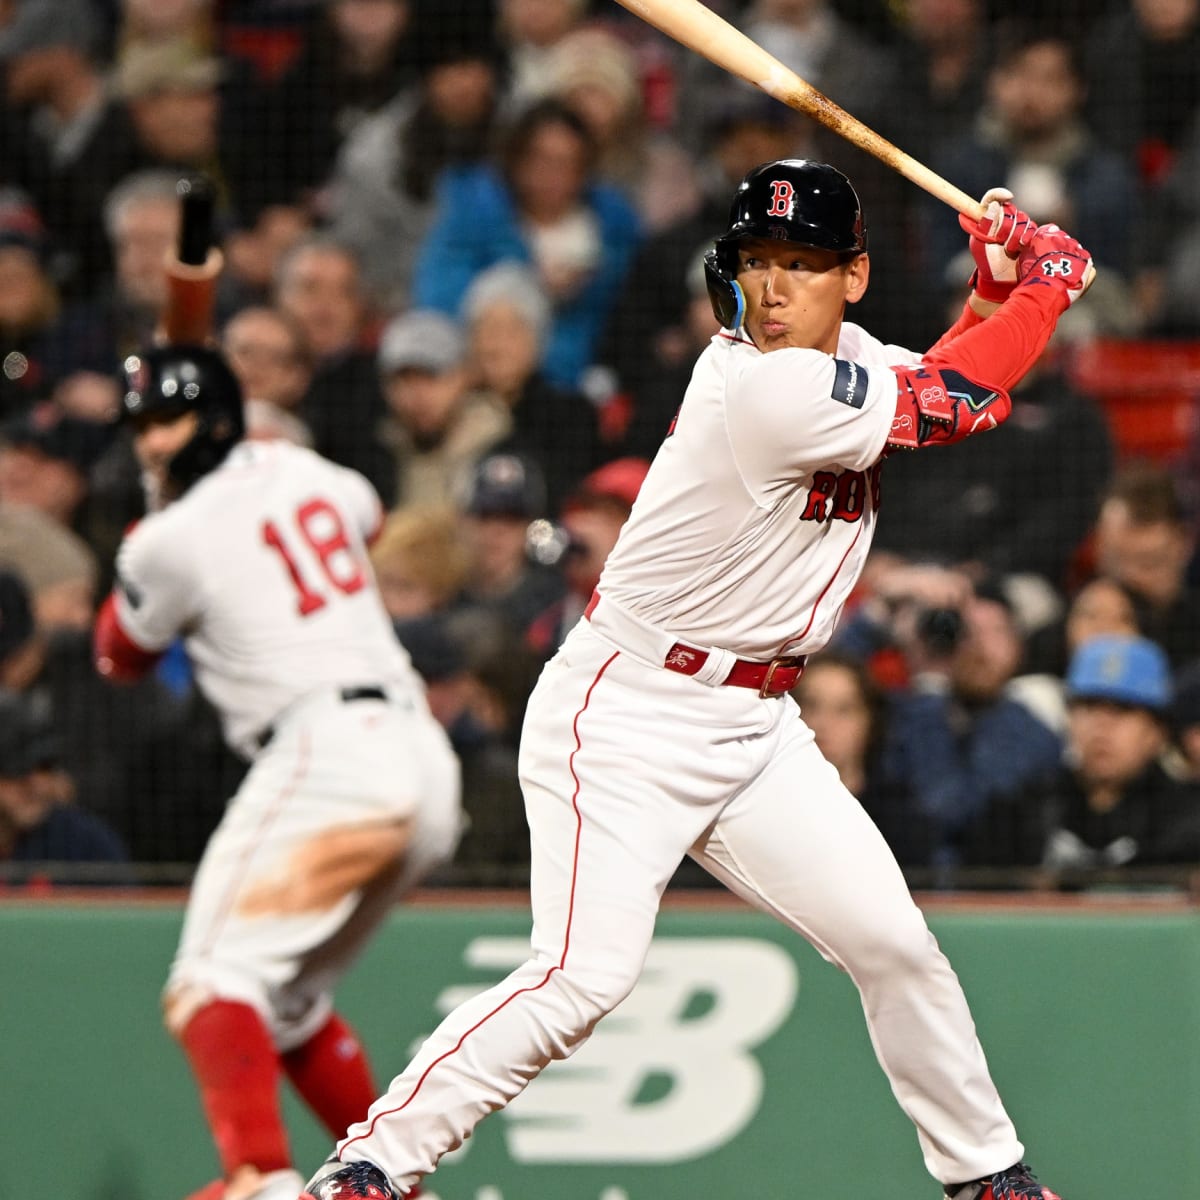 Red Sox Vs. Pirates Lineups: Yu Chang Starts At Second Base